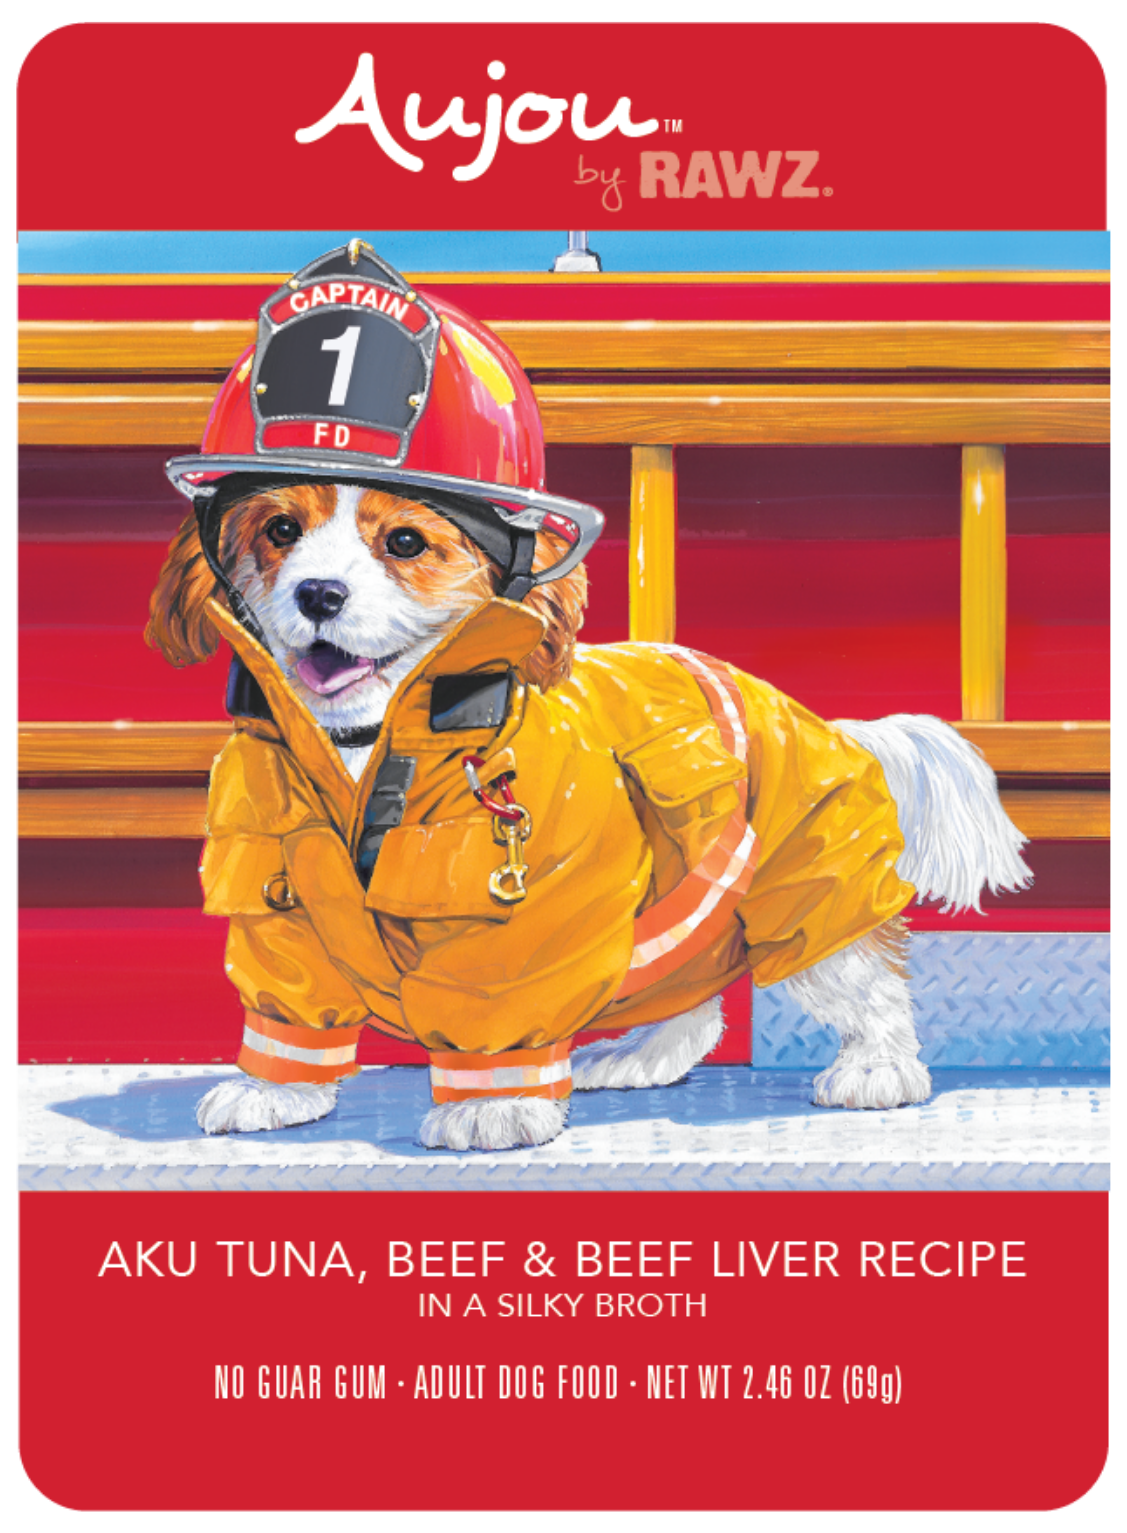 RAWZ Aujou Shreds Aku Tuna, Beef & Beef Liver Dog Pouch 2.46 oz.